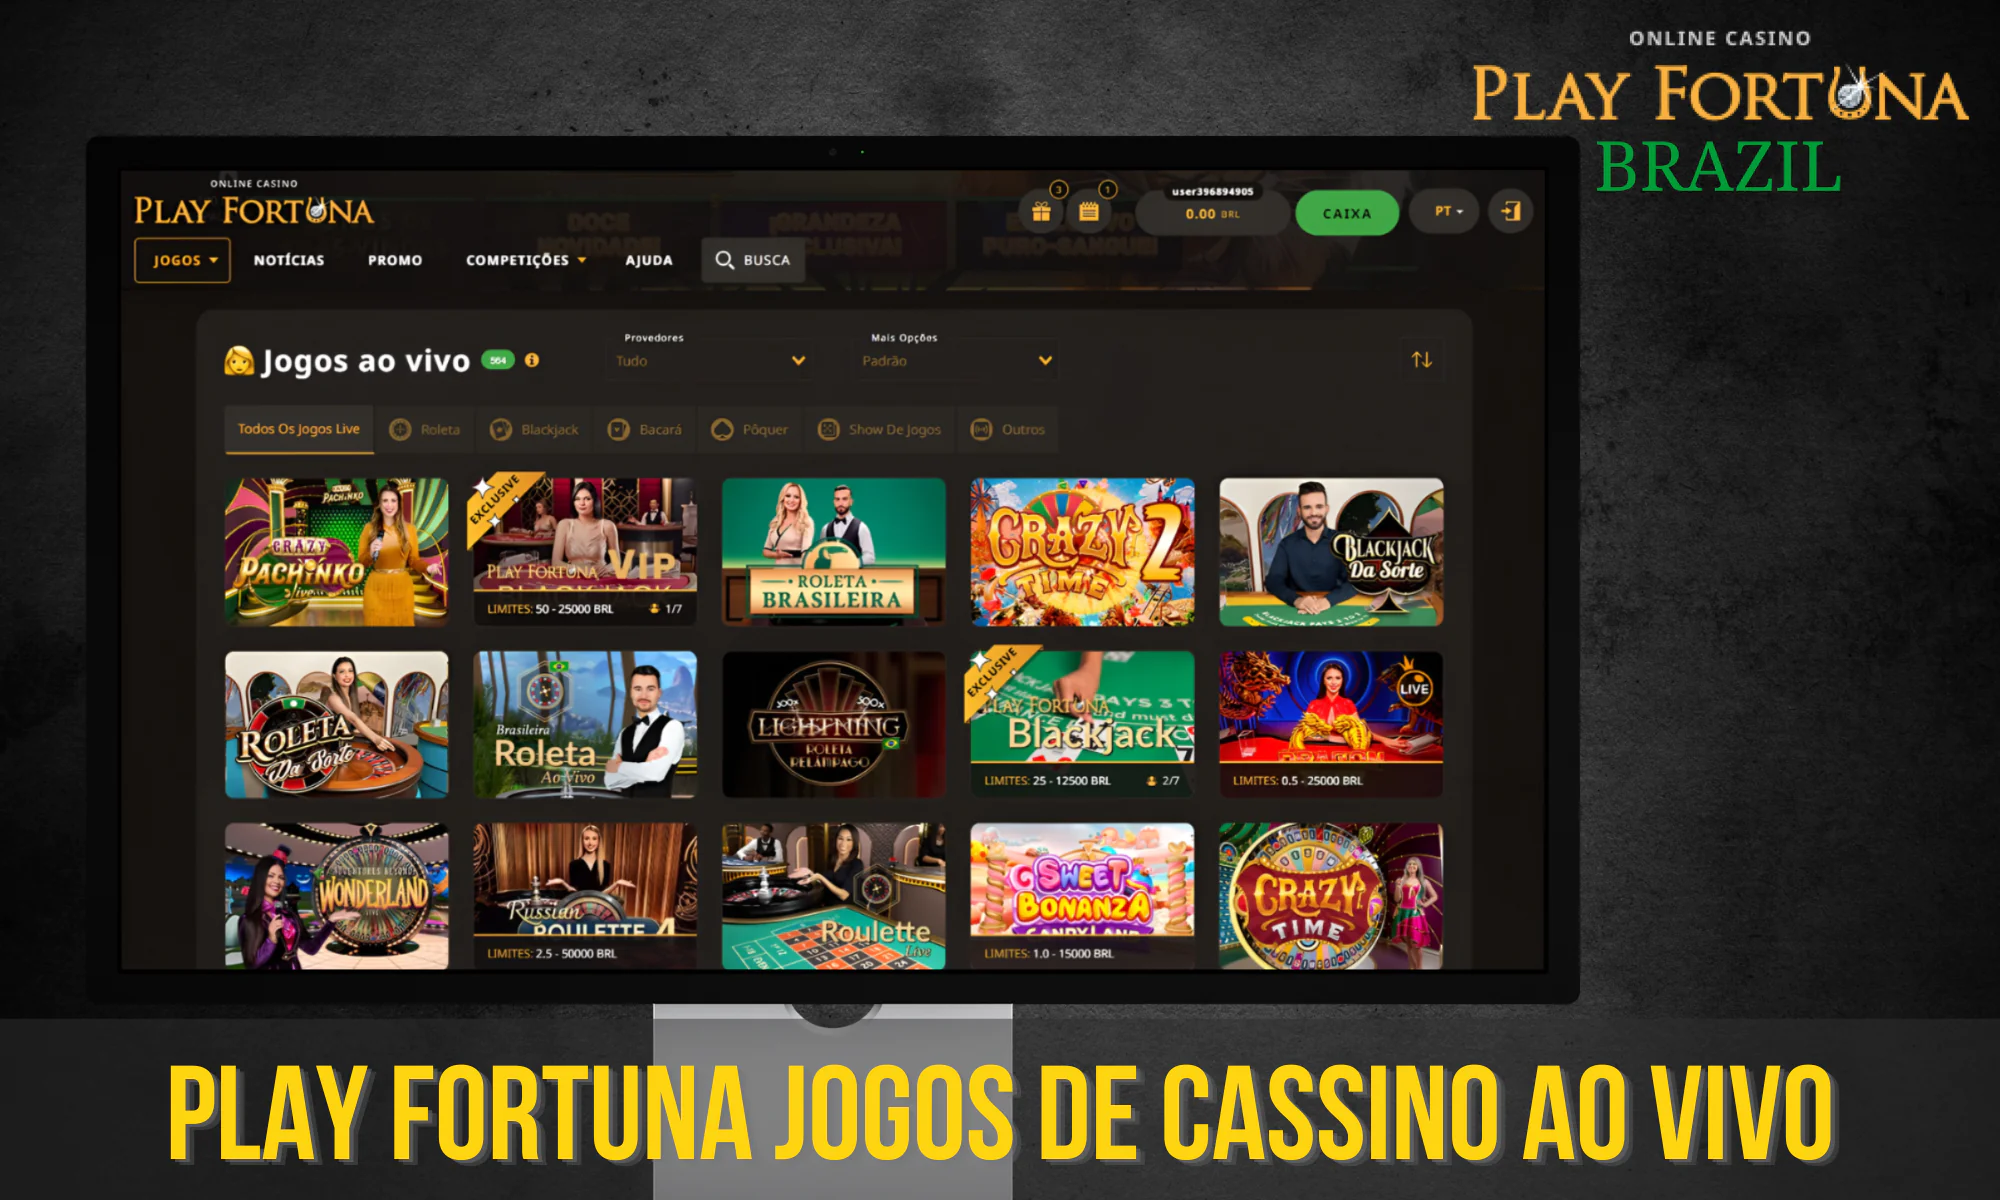 Os jogadores brasileiros têm a oportunidade de jogar com dealers ao vivo on-line no Play Fortuna